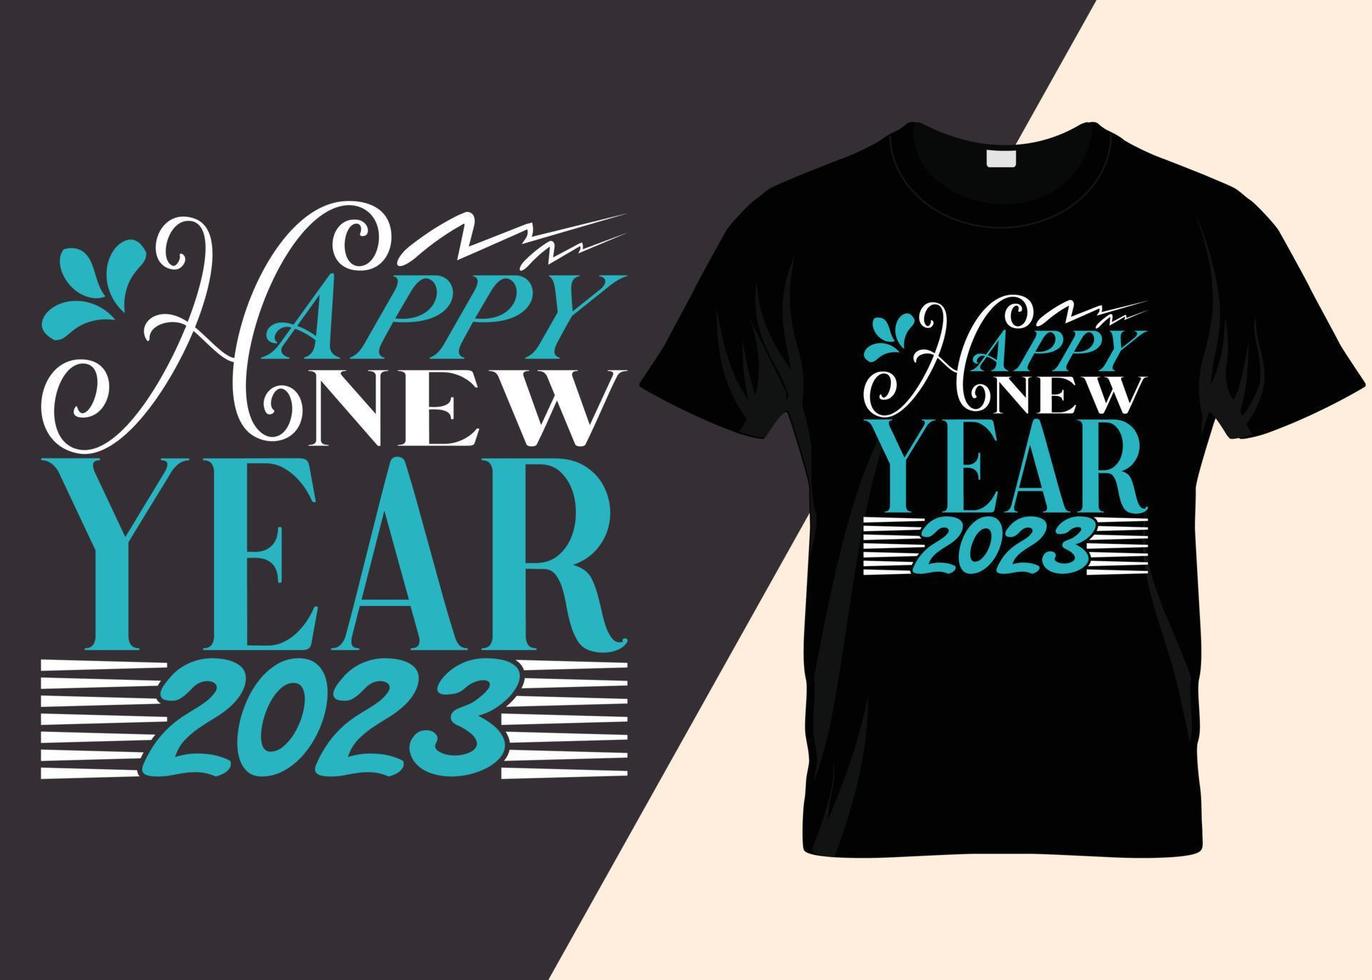 gelukkig nieuwjaar 2023 typografie t-shirtontwerp vector